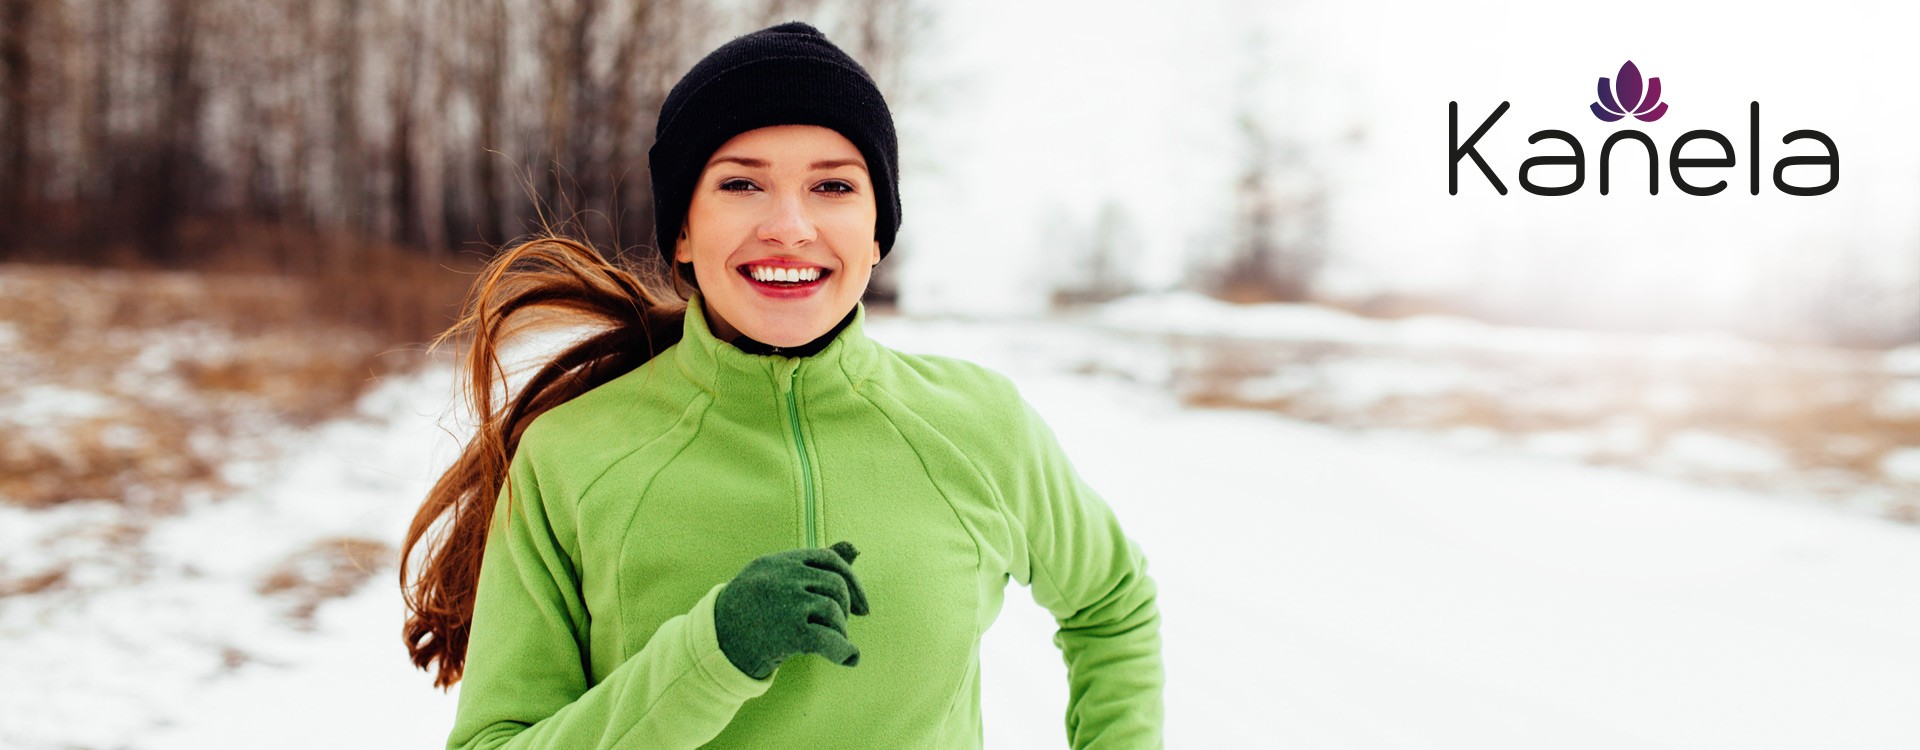 Sport in inverno: consigli motivazionali contro il freddo e le intemperie